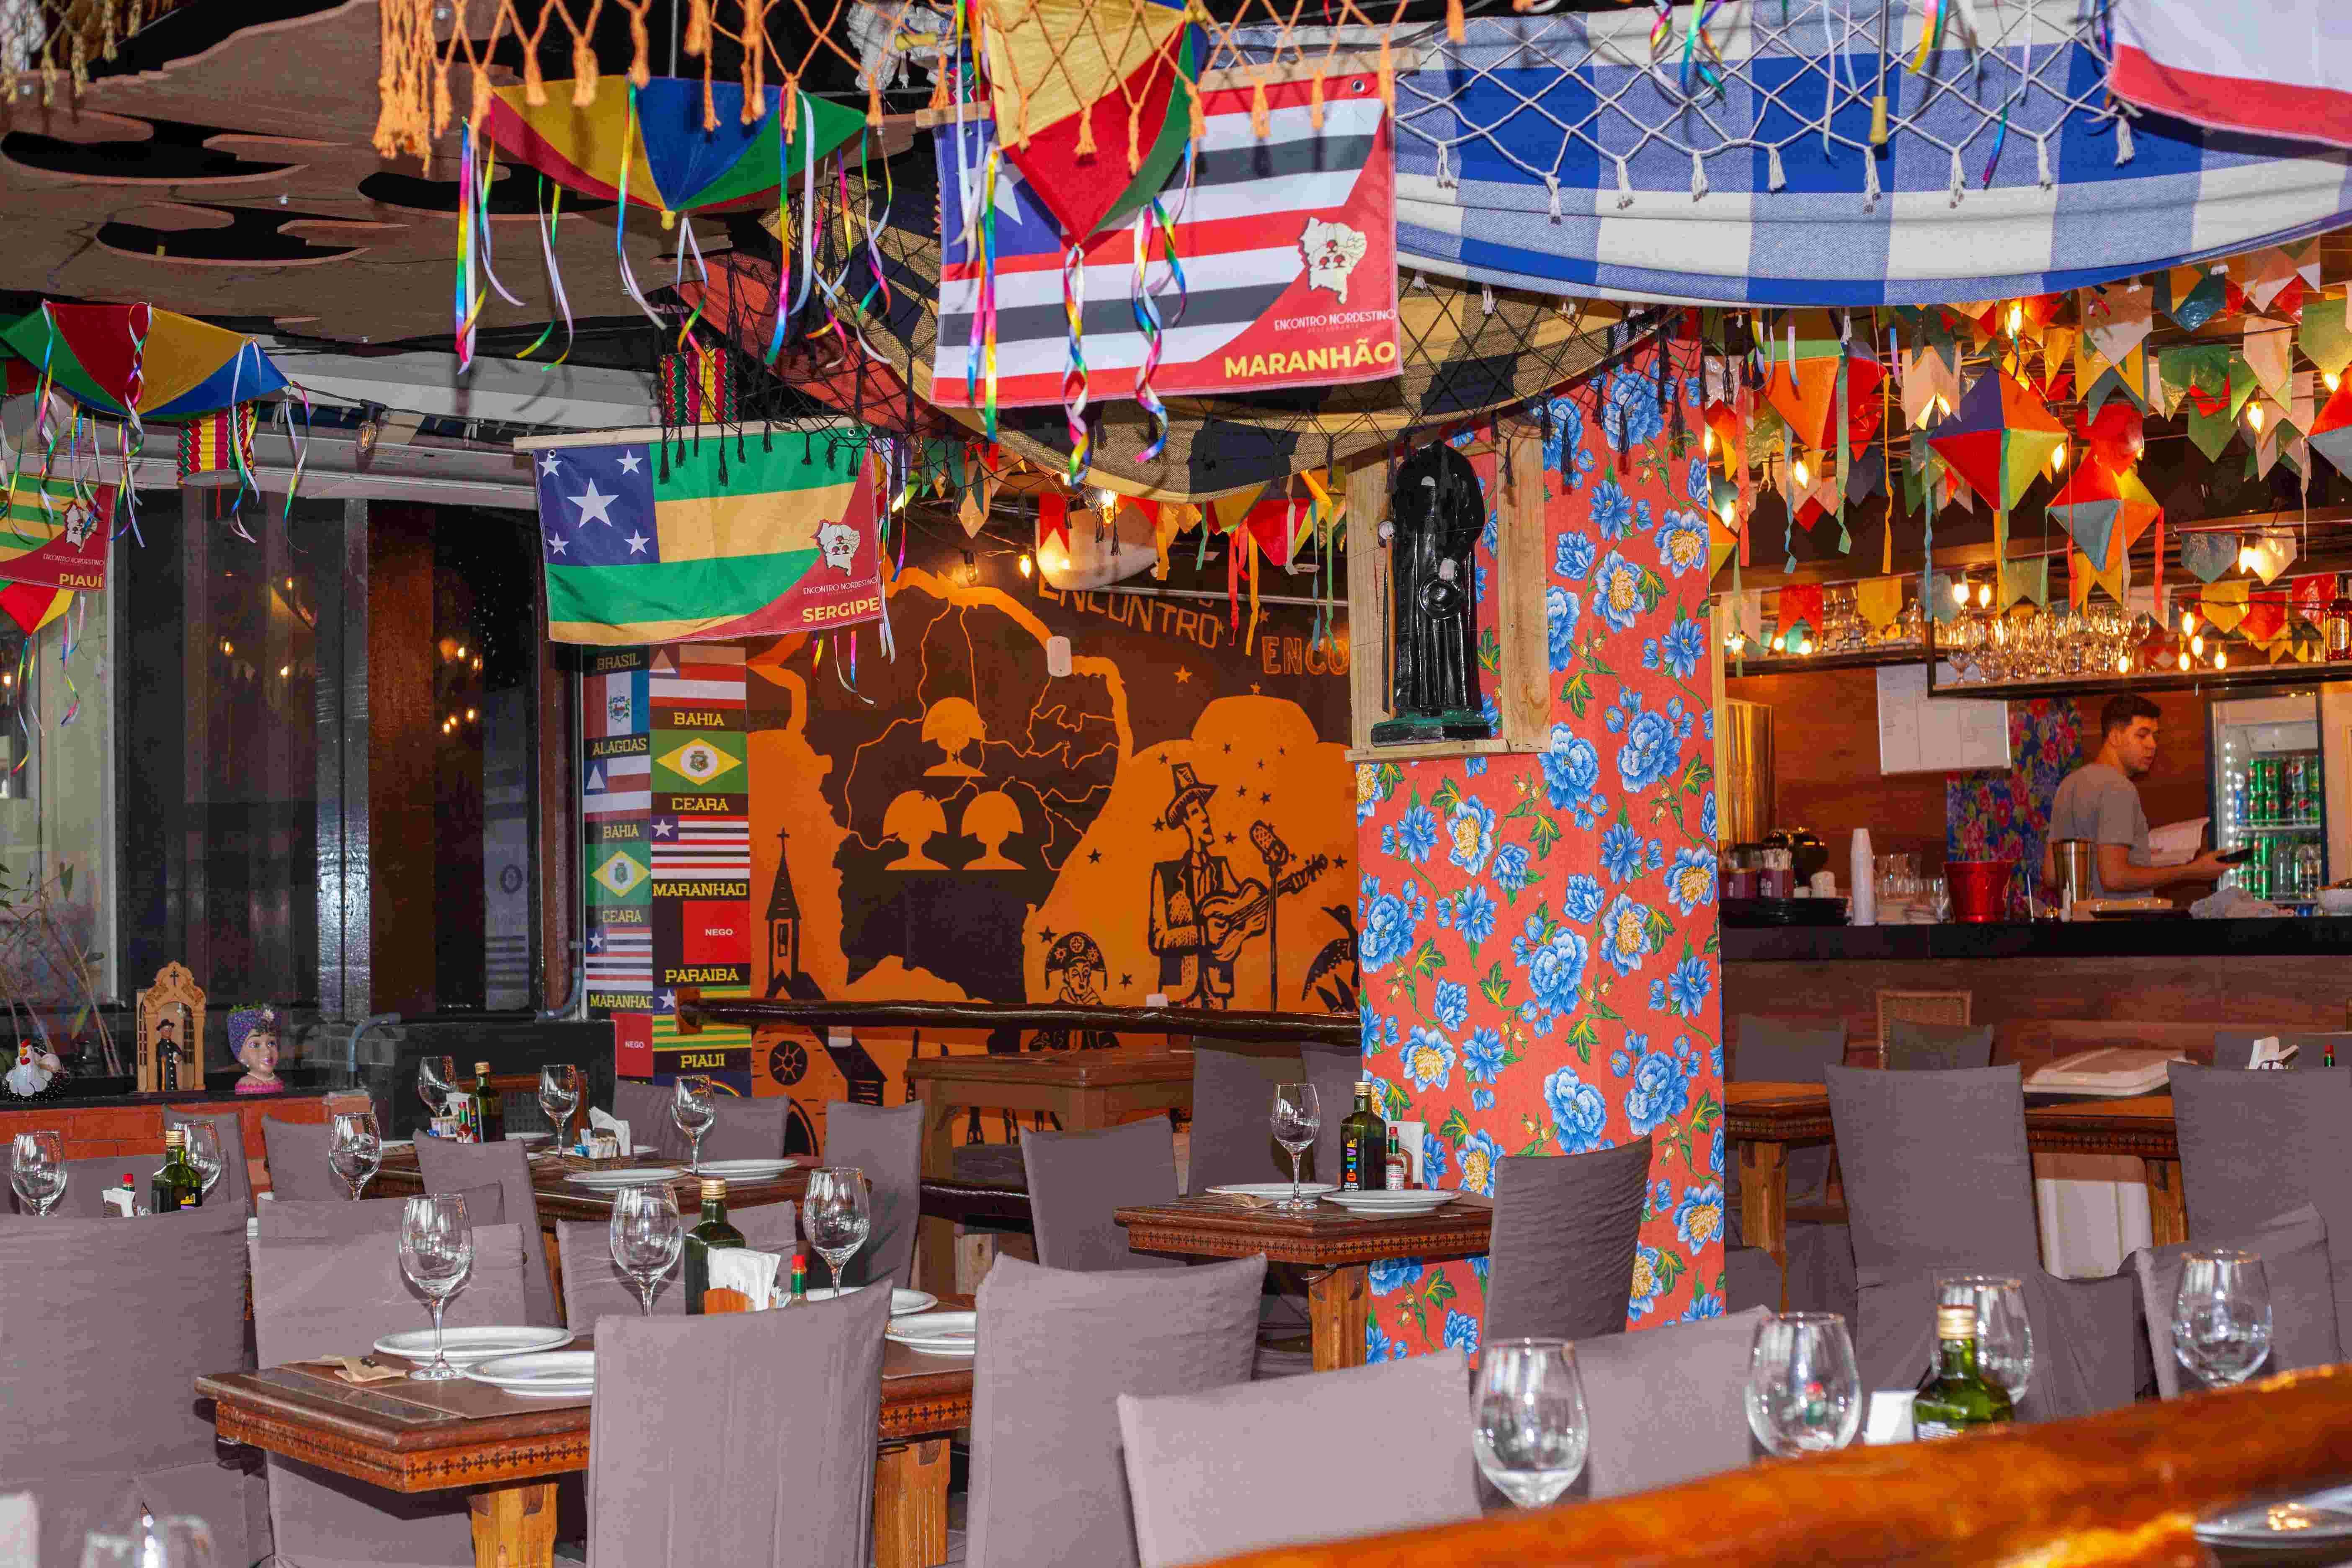 Cores nordestinas: o salão é decorado de forma alegre com bandeiras e imagens típicas